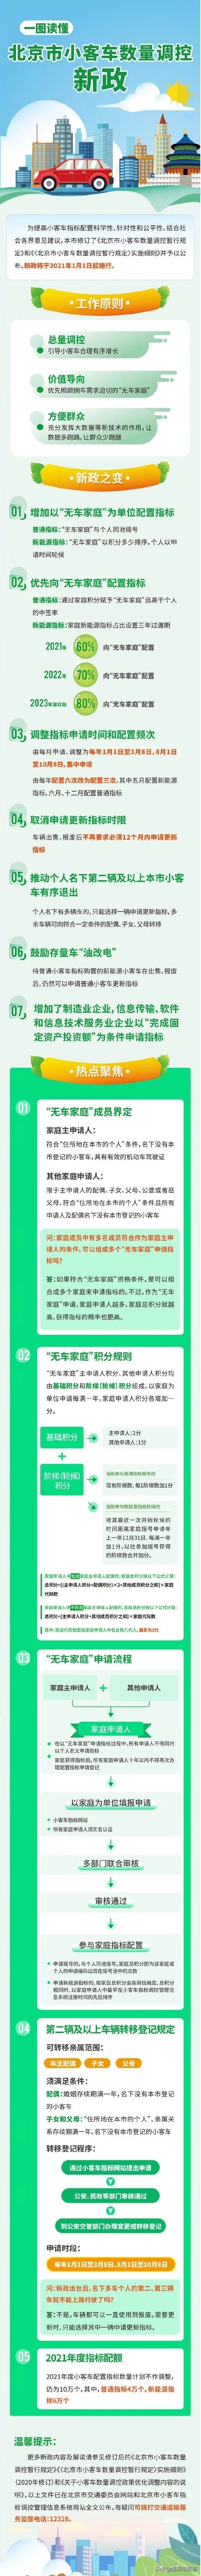 北京小客车调控新政：每人只保留一个指标，明年开始实施